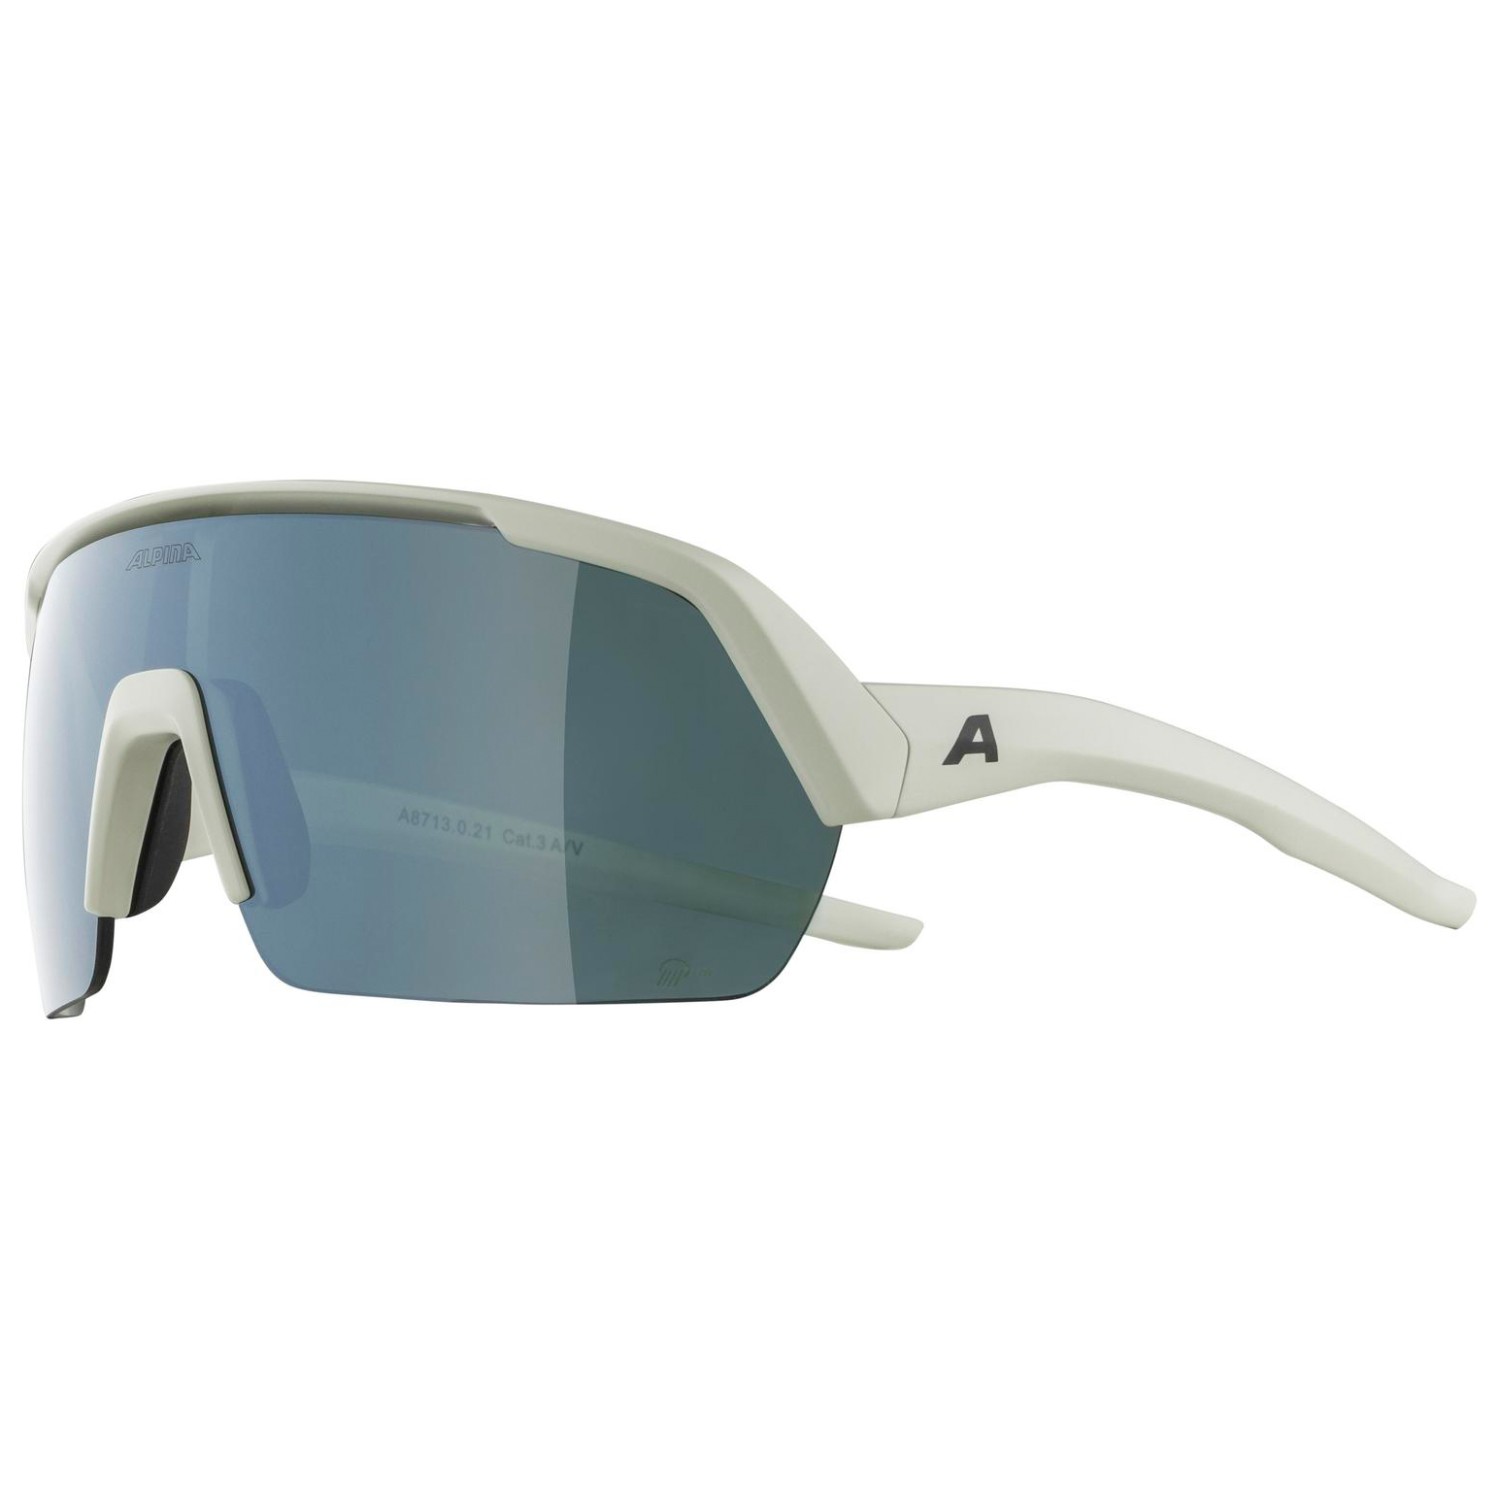 Велосипедные очки Alpina Turbo HR Q Lite Mirror Cat 3, цвет Cool/Grey Matt маска alpina big horn q lite 2021 2022 для взрослых унисекс [a72078 36]